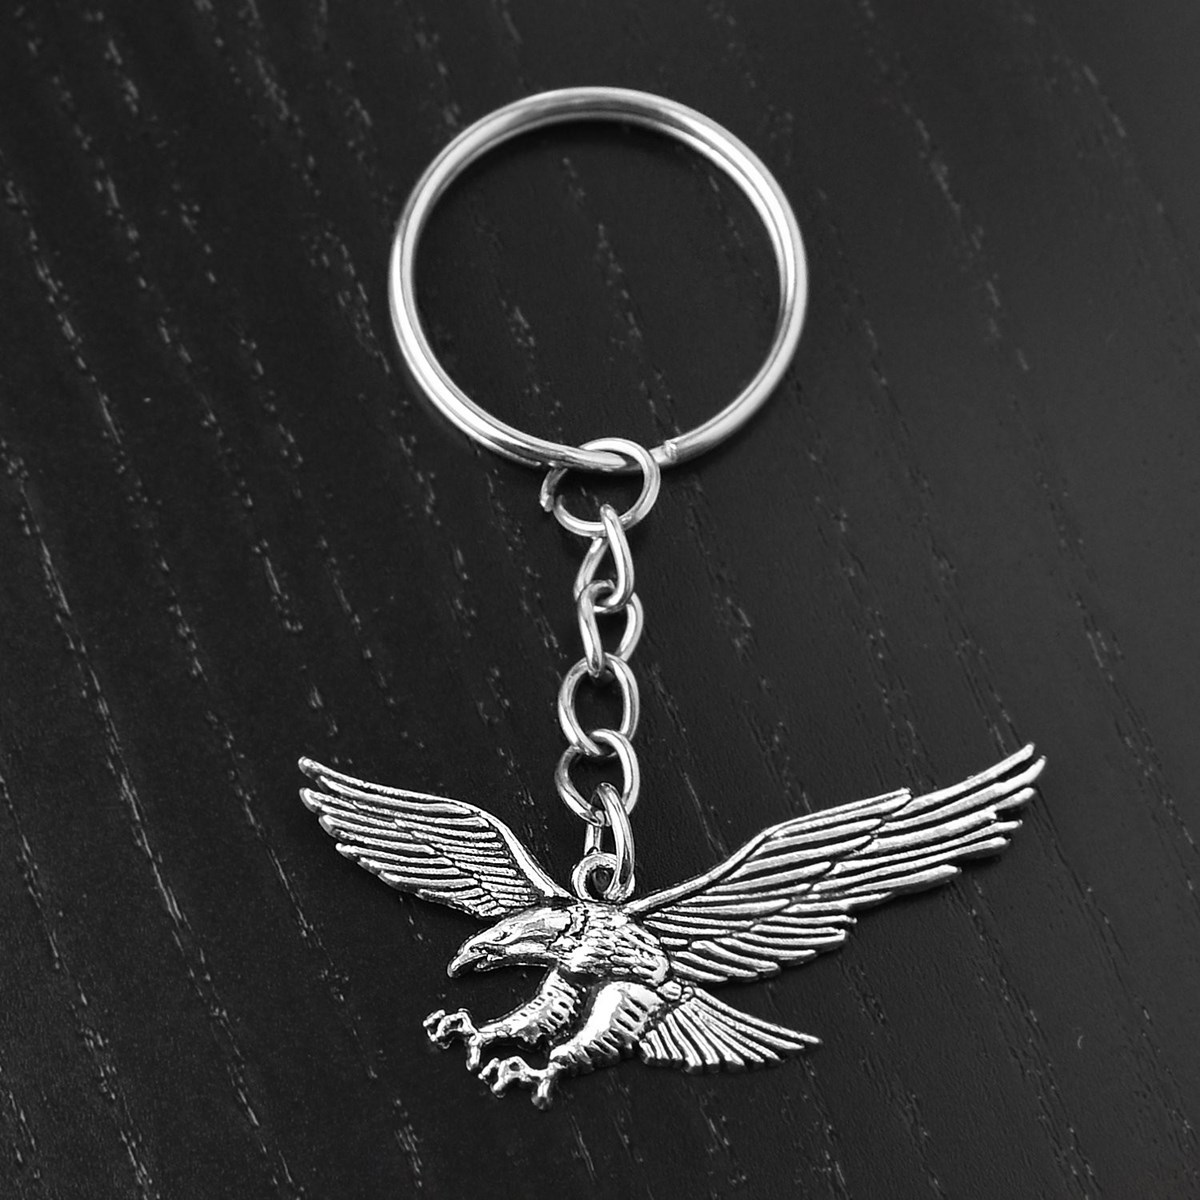 Porte-clés aigle royal oiseau ailes ouvertes argenté - vue 4